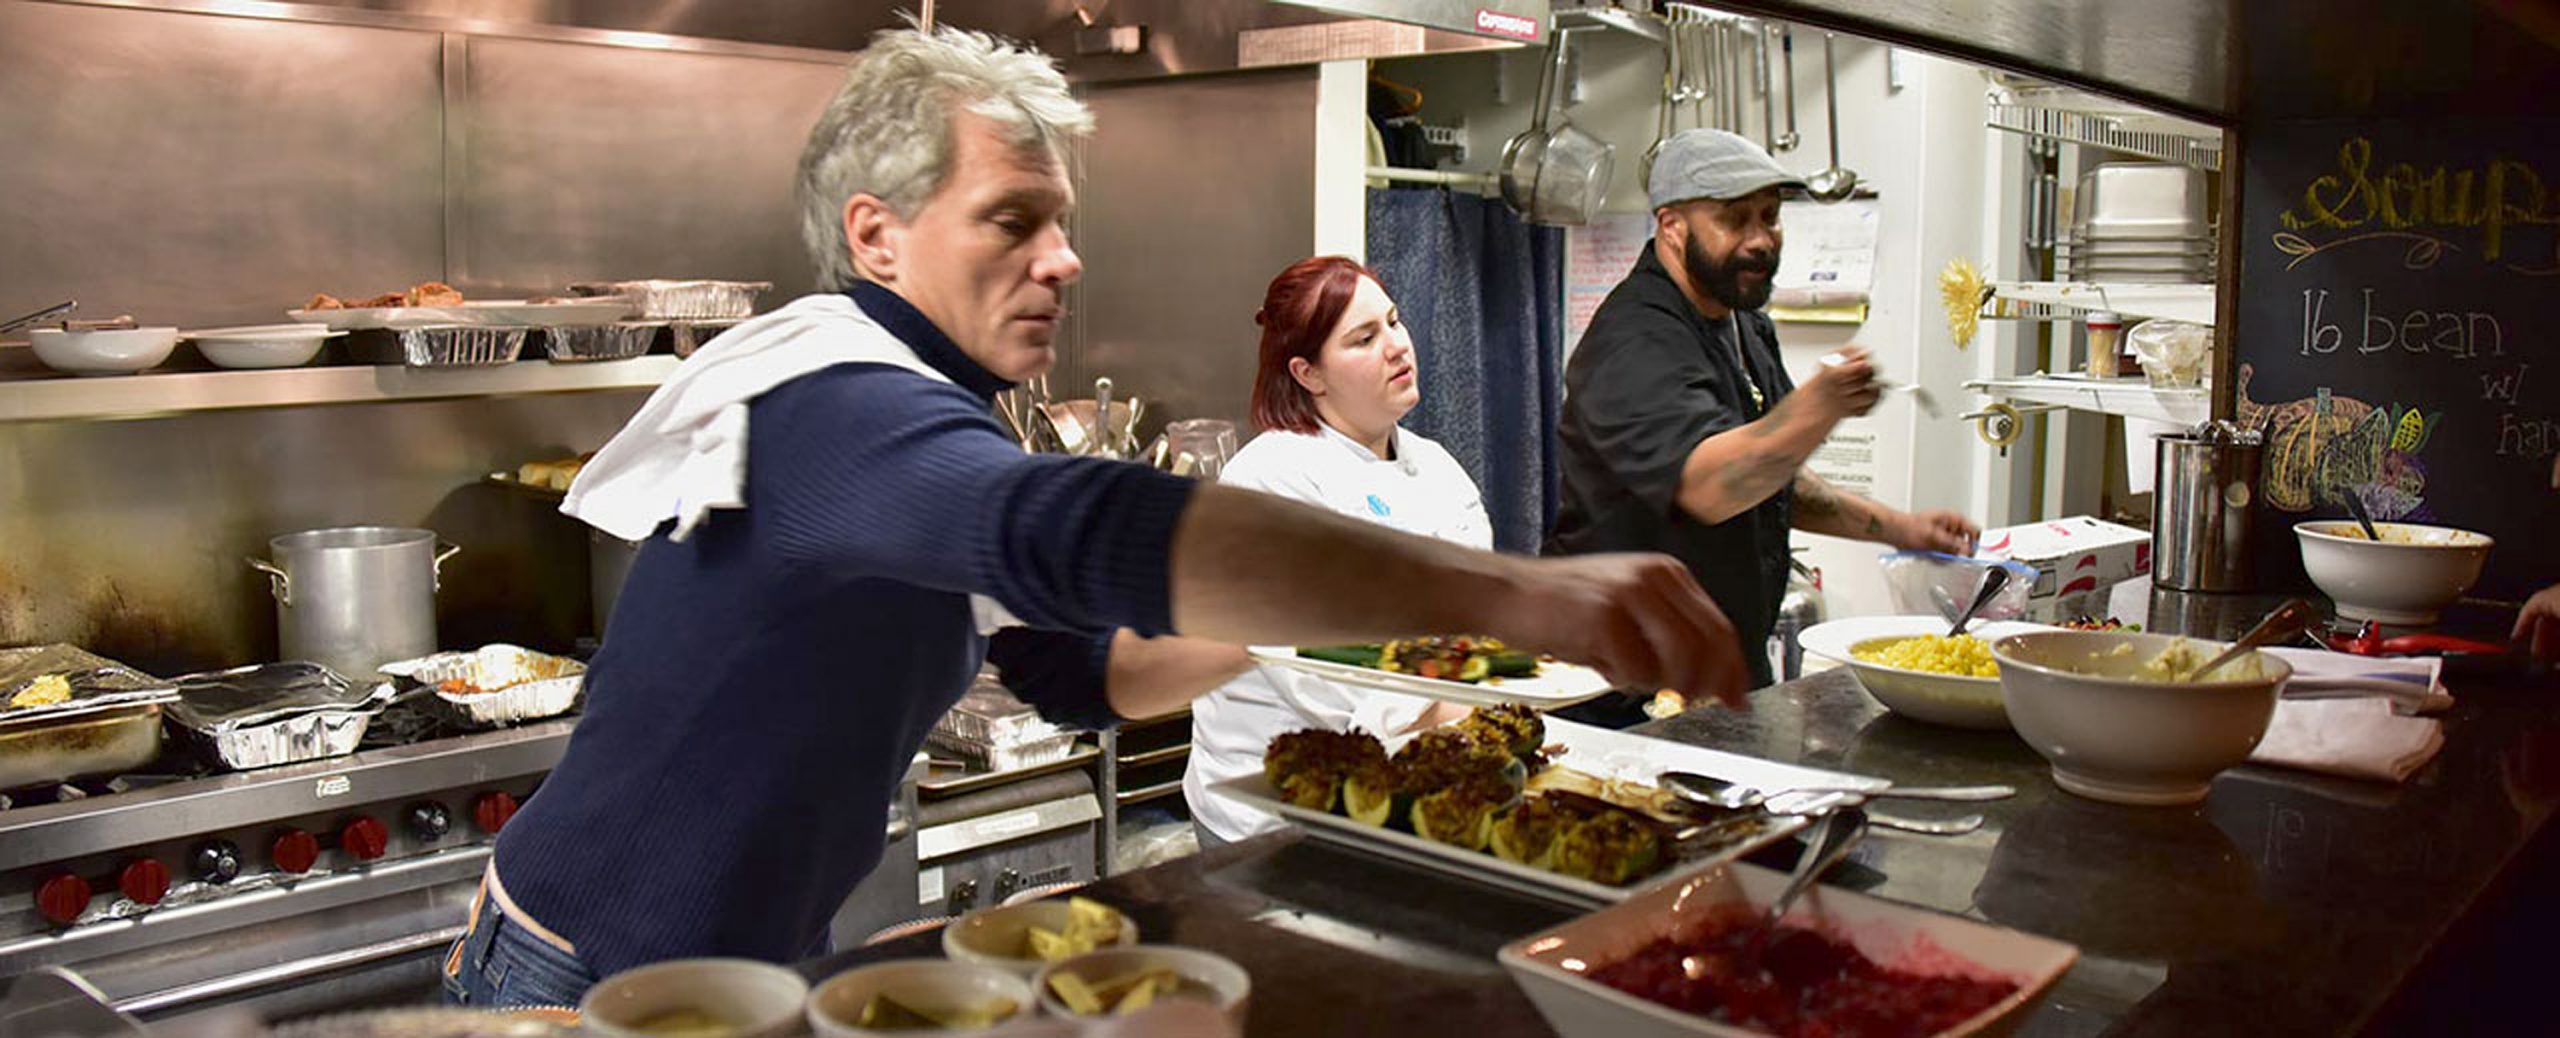 Ο Tζον Μπον Τζόβι, πλένει πιάτα και σερβίρει άστεγους στο εστιατόρια που δημιούργησε για τους ευάλωτους